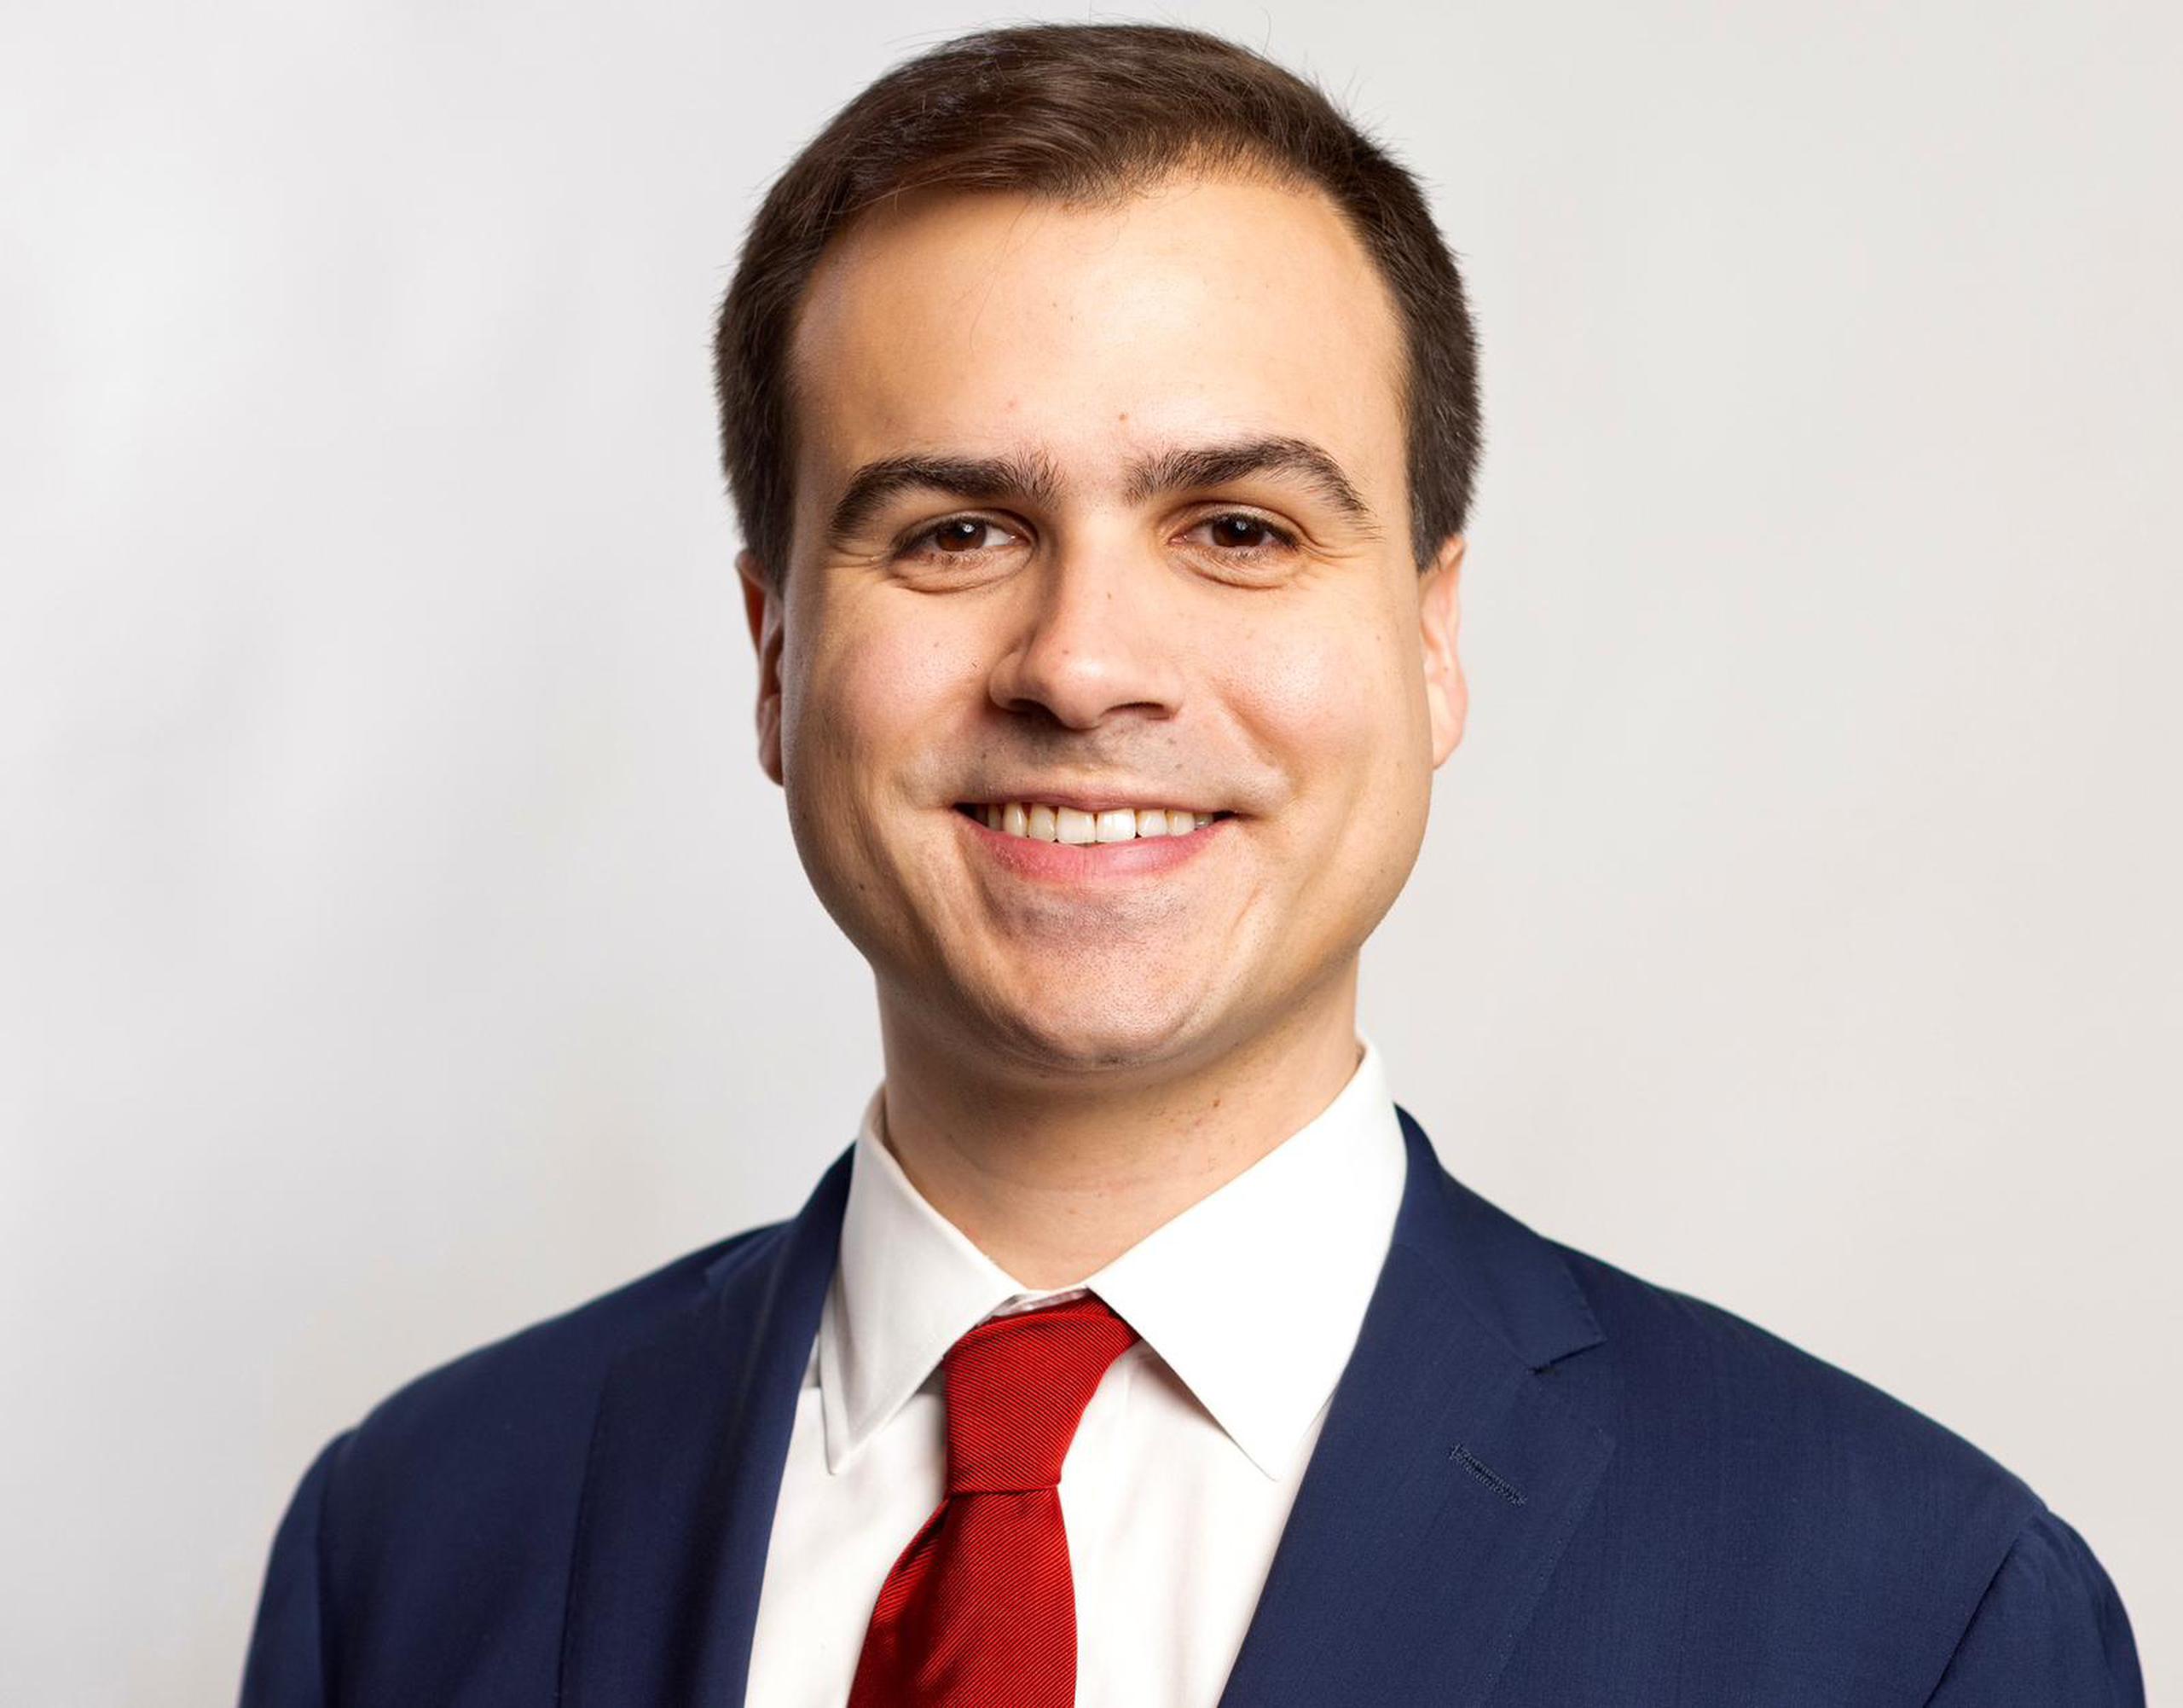 Pablo José Hernández Rivera se graduó de la Universidad de Harvard y de la Escuela de Derecho de la Universidad de Stanford.